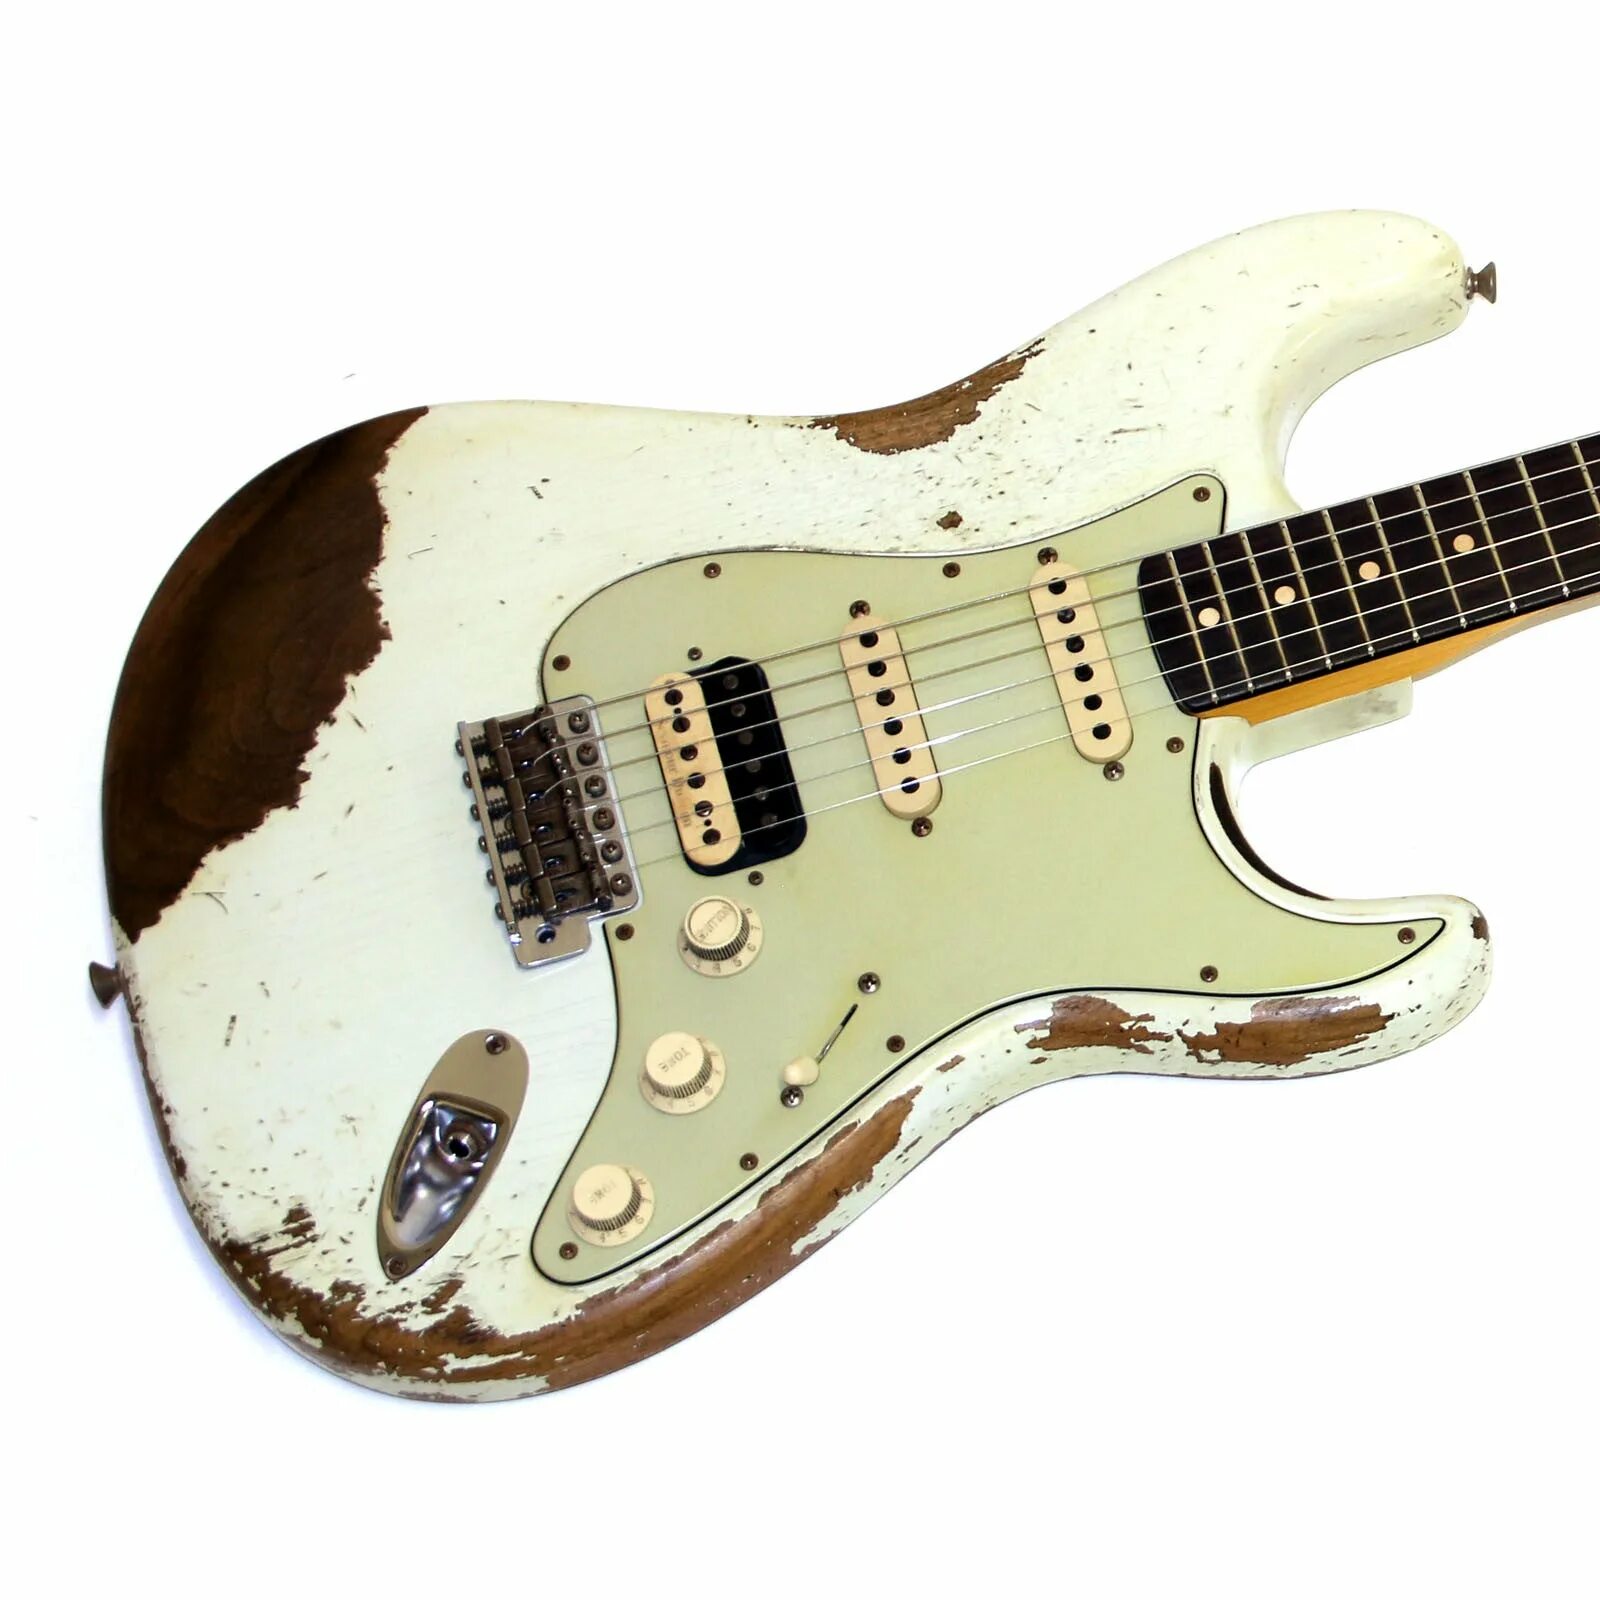 Fender SRV Stratocaster черный. Fender Highway one Stratocaster HSS Black. Гитара Fender Custom shop David Gilmour Relic 2012. Fender Custom 60 Stratocaster HSS Roasted Ash.